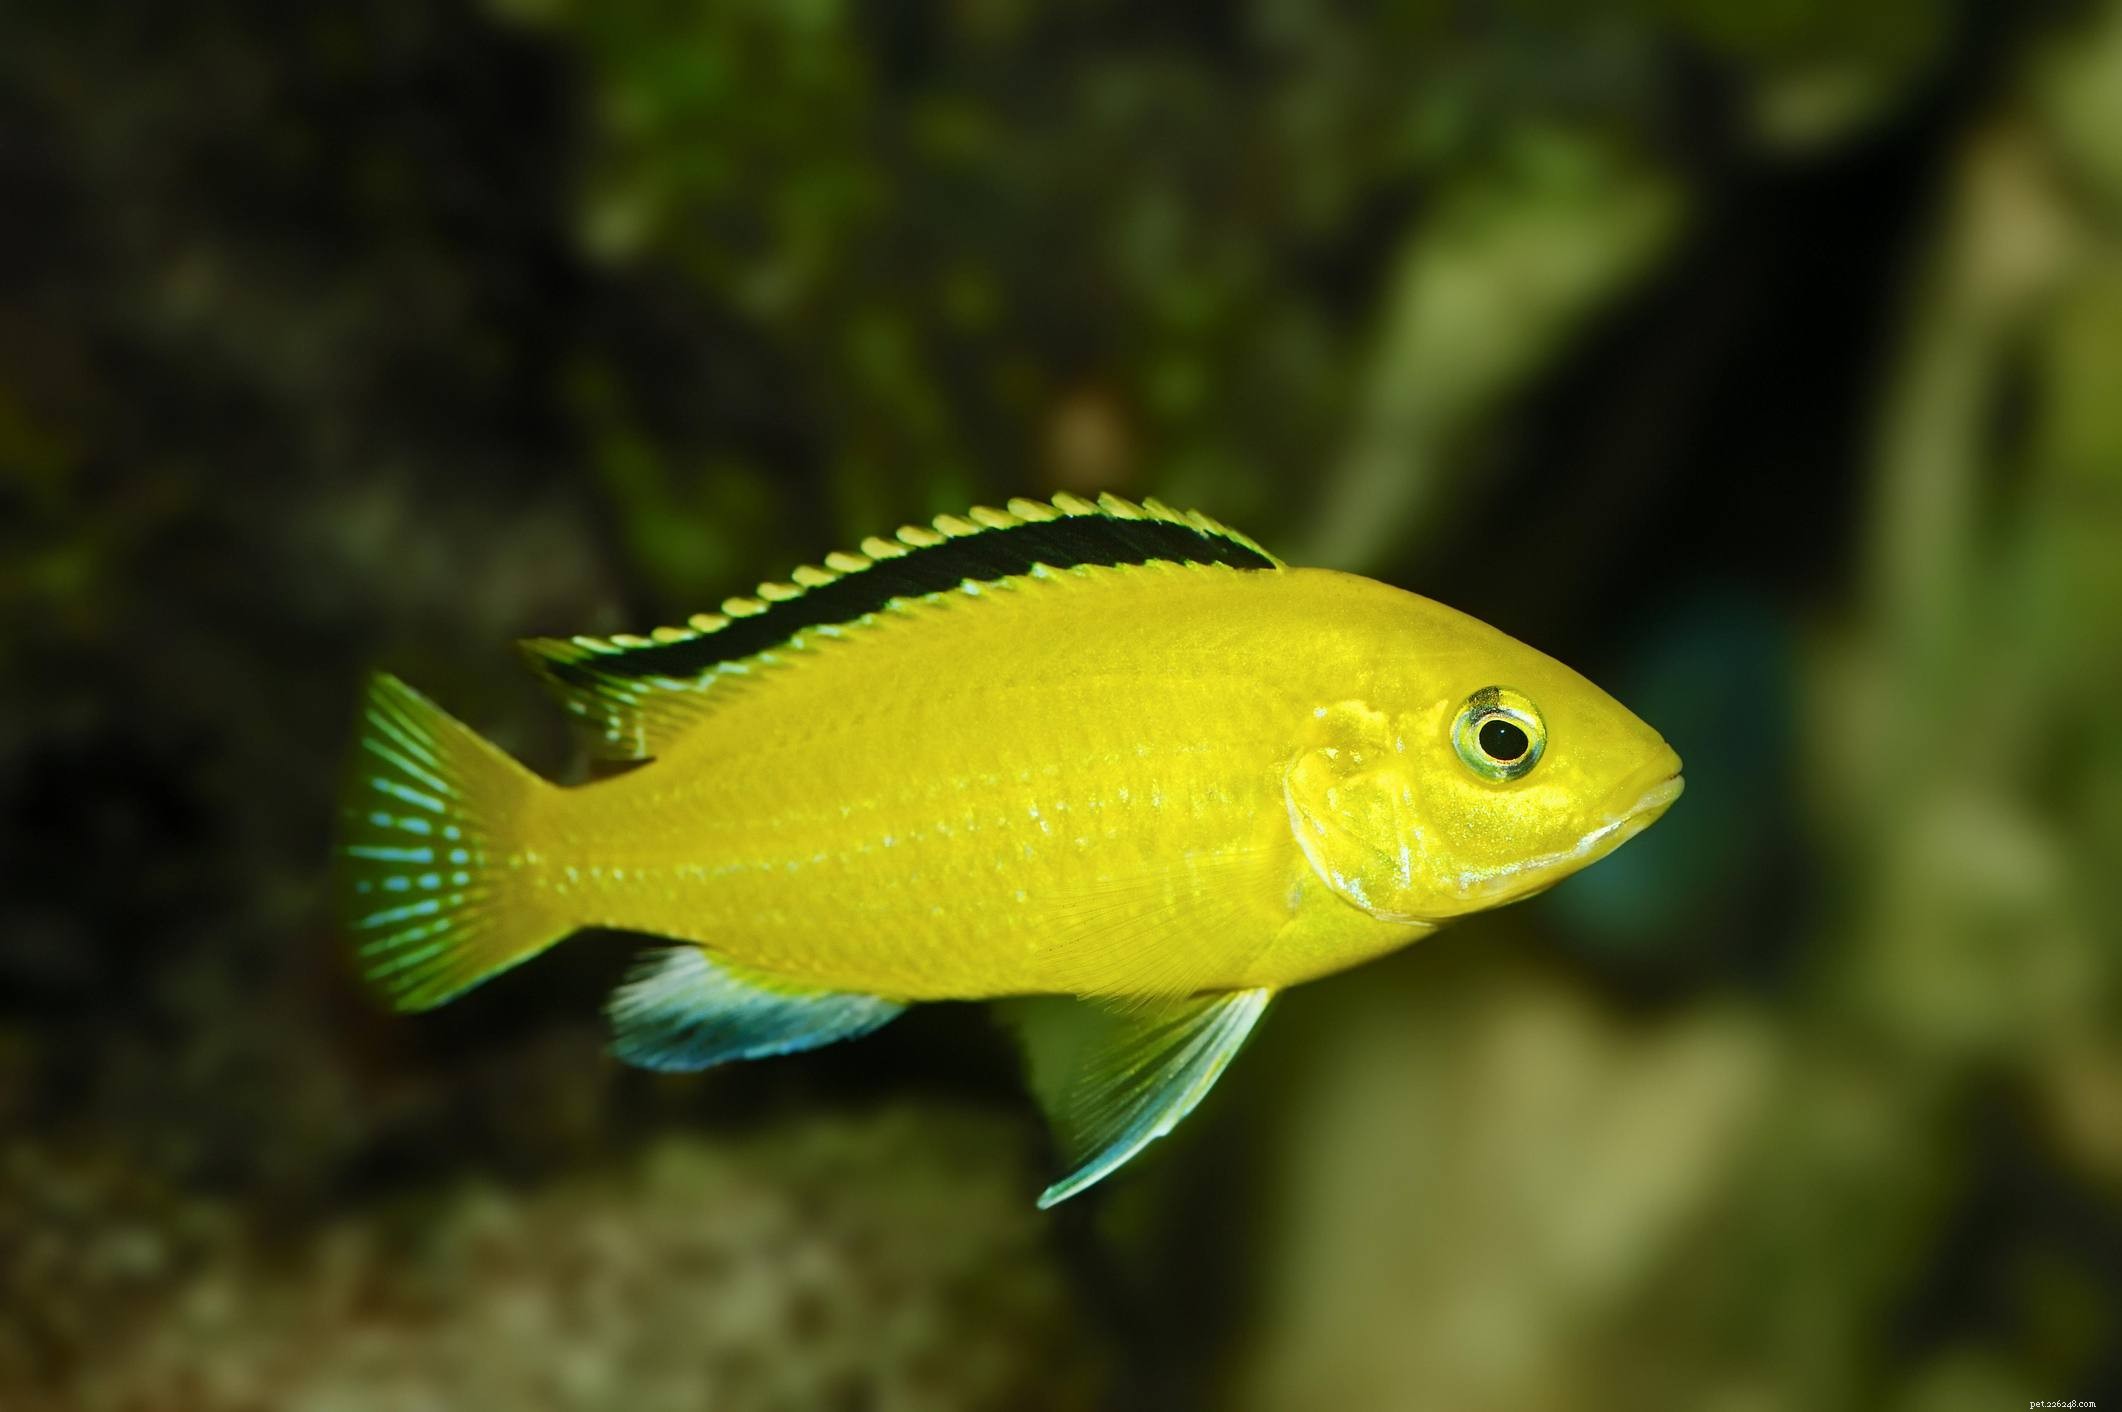 Užitečný seznam druhů akvarijních ryb podle obecného názvu